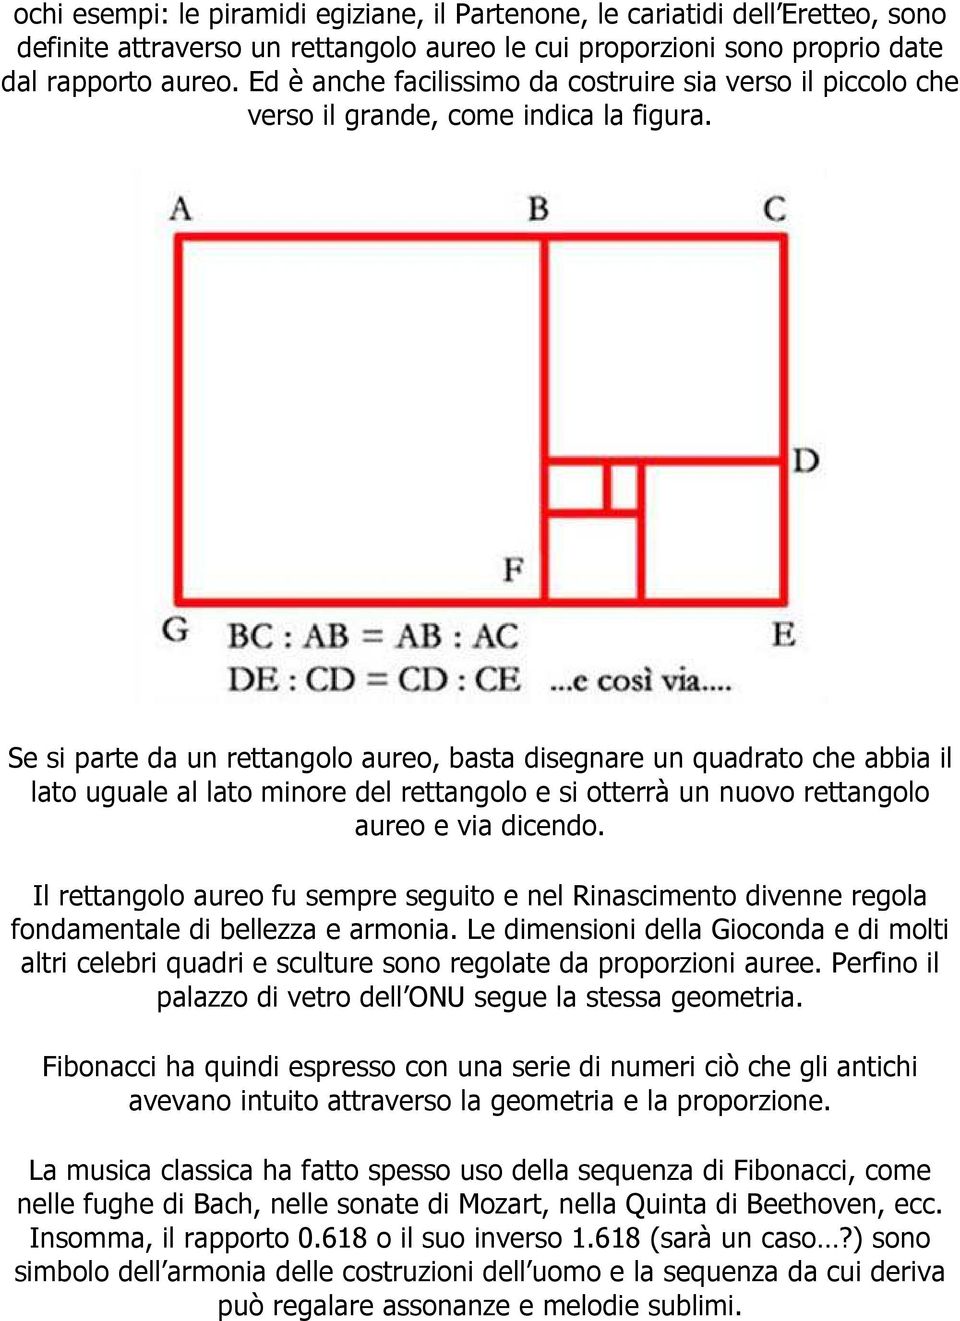 Se si parte da un rettangolo aureo, basta disegnare un quadrato che abbia il lato uguale al lato minore del rettangolo e si otterrà un nuovo rettangolo aureo e via dicendo.